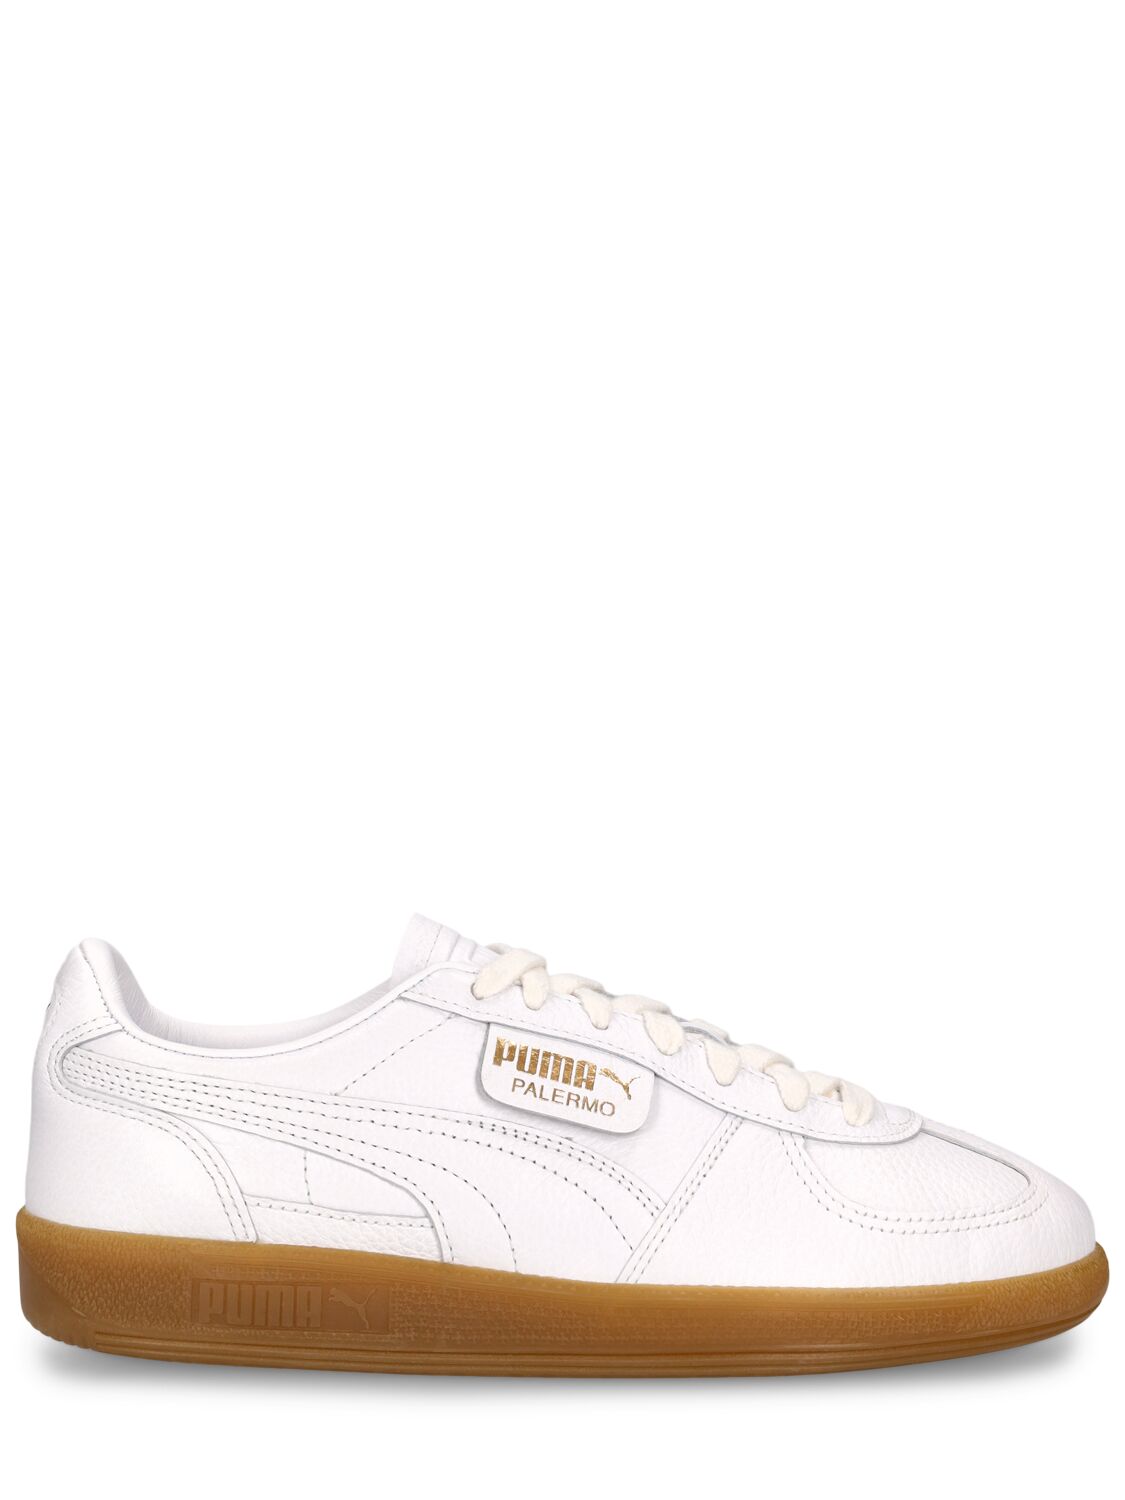 Puma Palermo Premium Sneakers In White